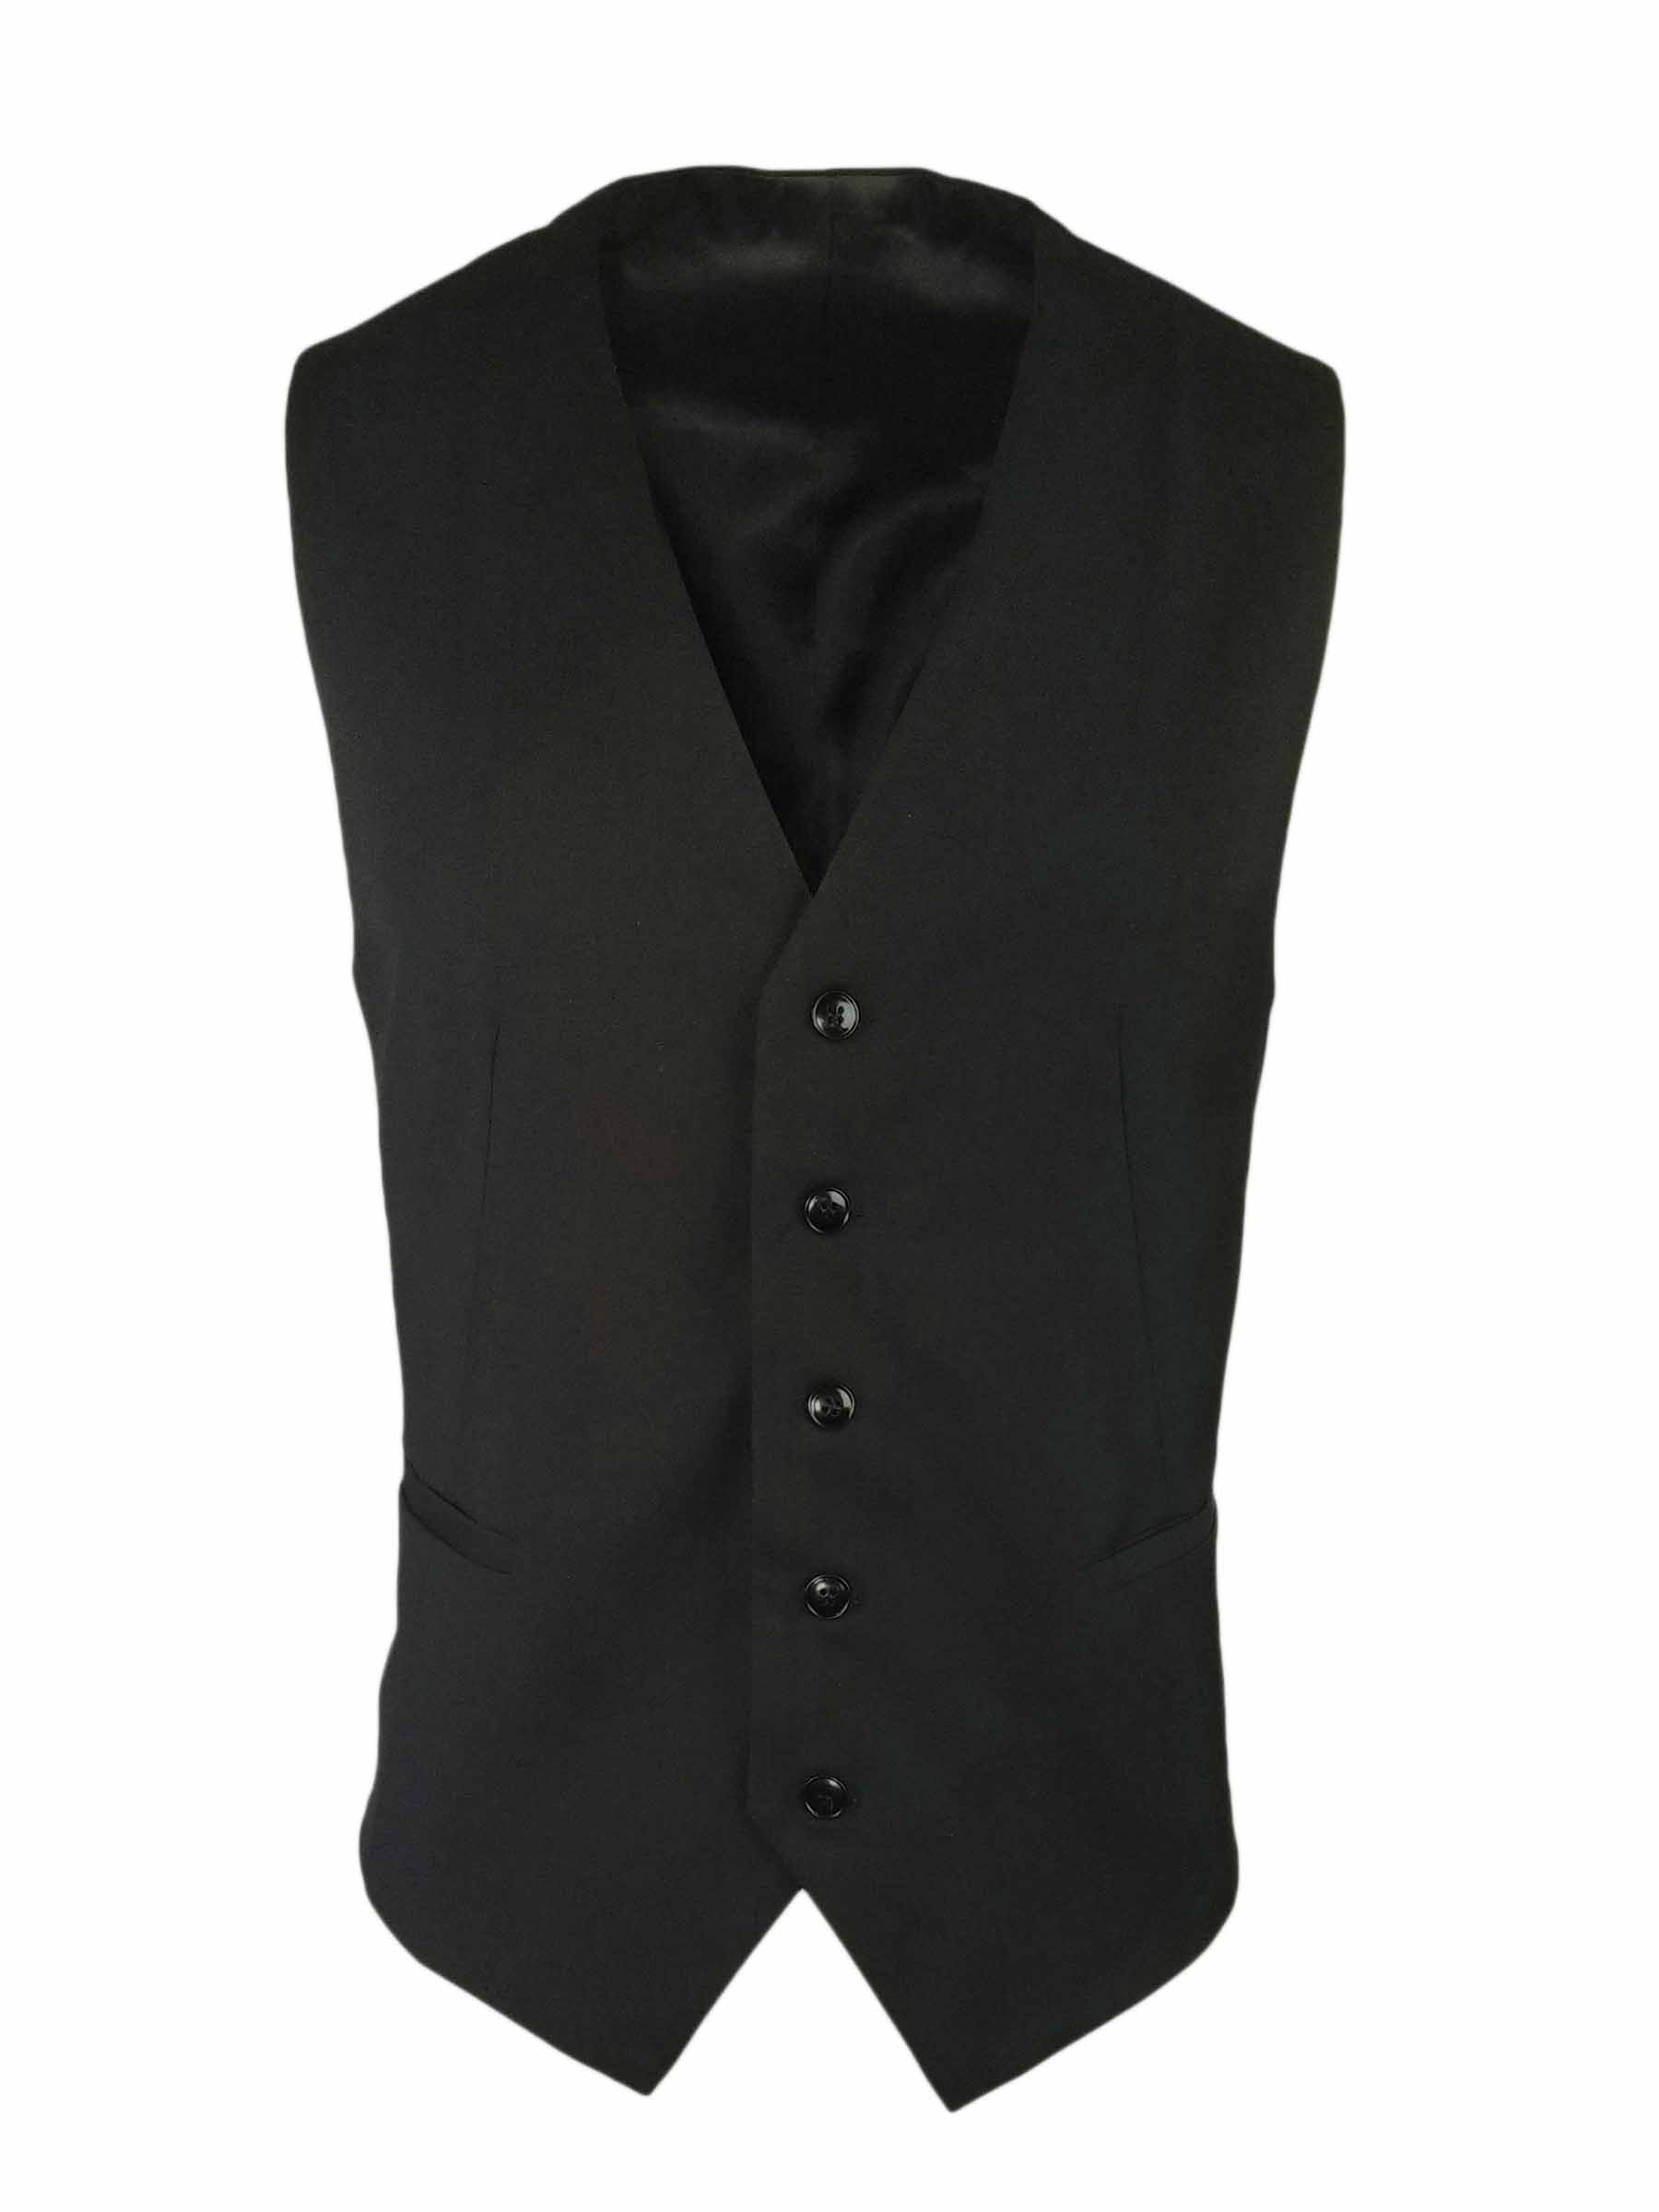 Men's Vest - Black Wool Blend - Uniform Edit